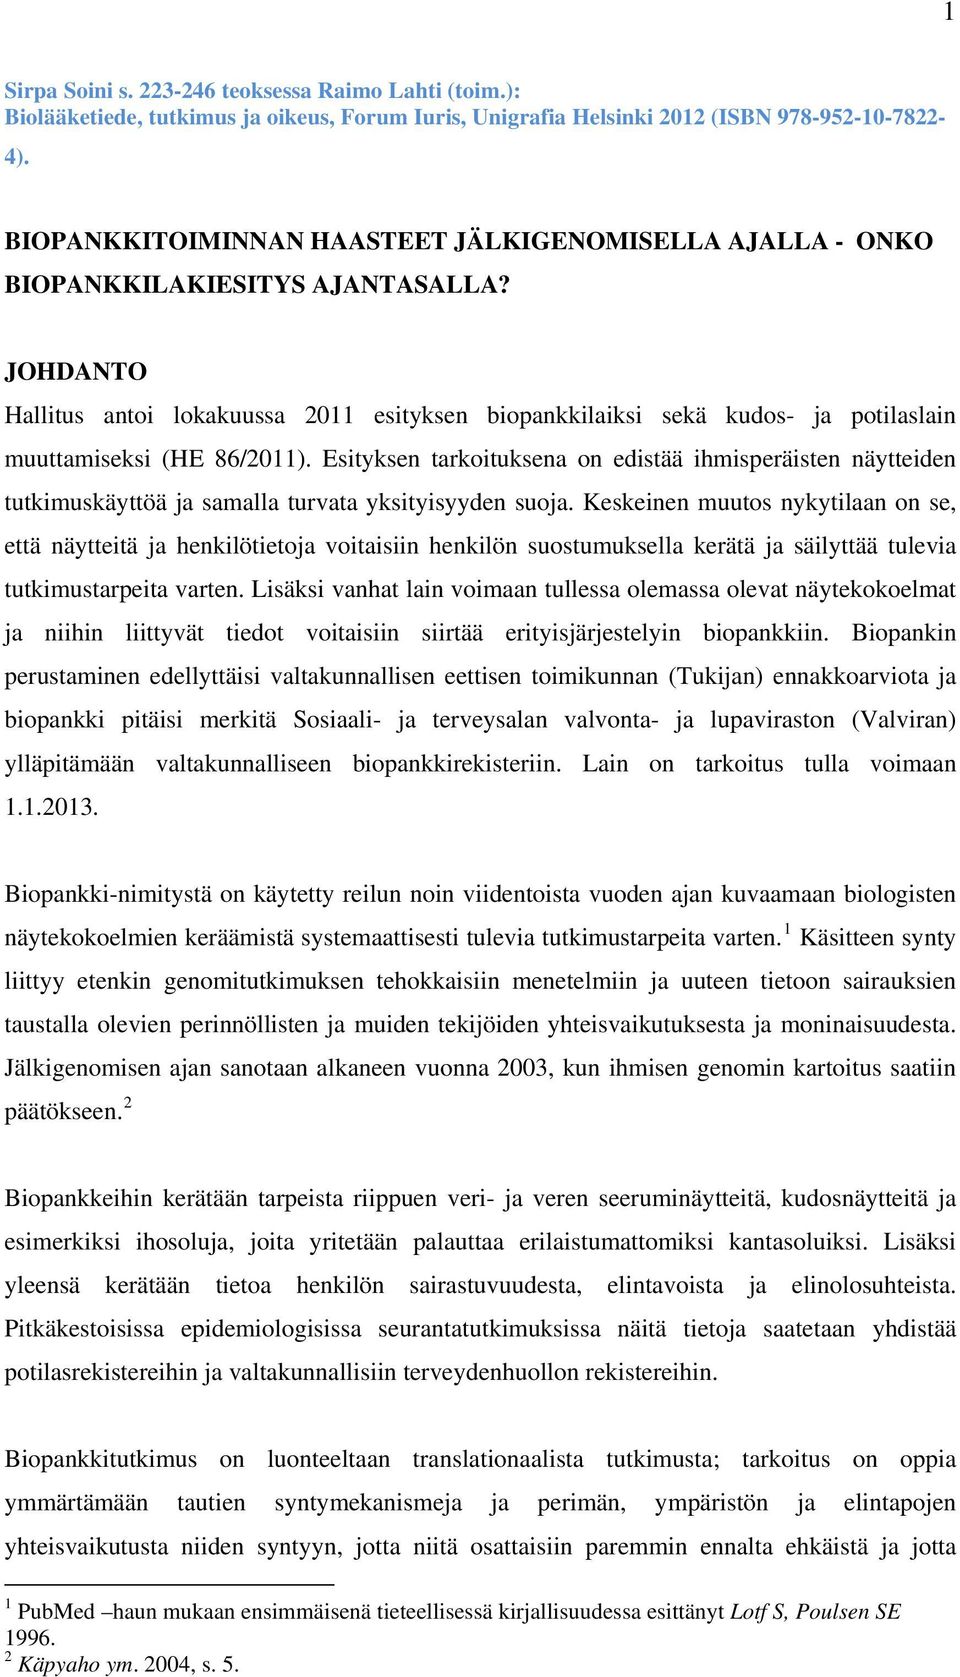 JOHDANTO Hallitus antoi lokakuussa 2011 esityksen biopankkilaiksi sekä kudos- ja potilaslain muuttamiseksi (HE 86/2011).